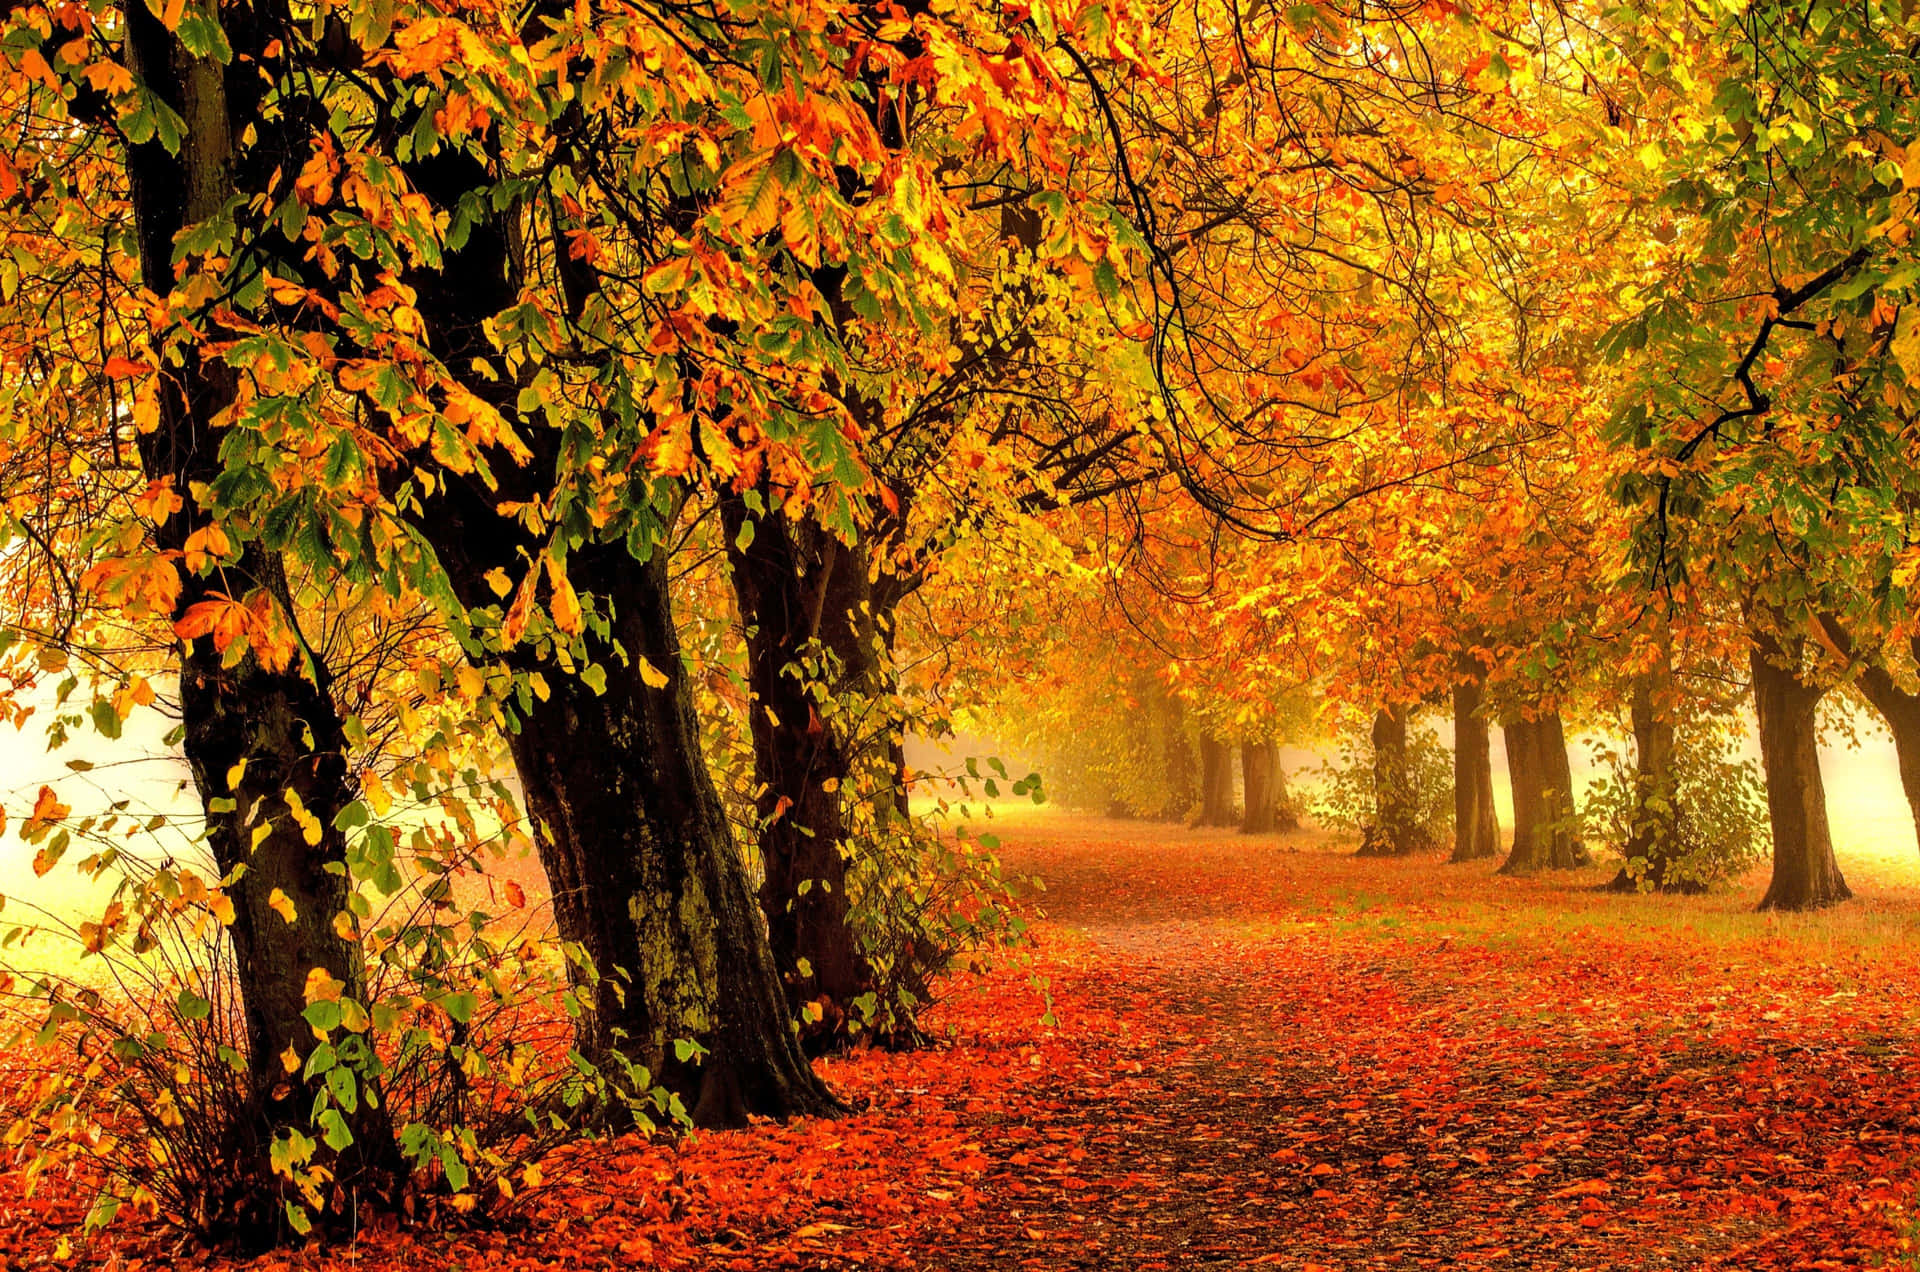 Machensie Einen Spaziergang In Dieser Wunderschönen Herbstszene. Wallpaper